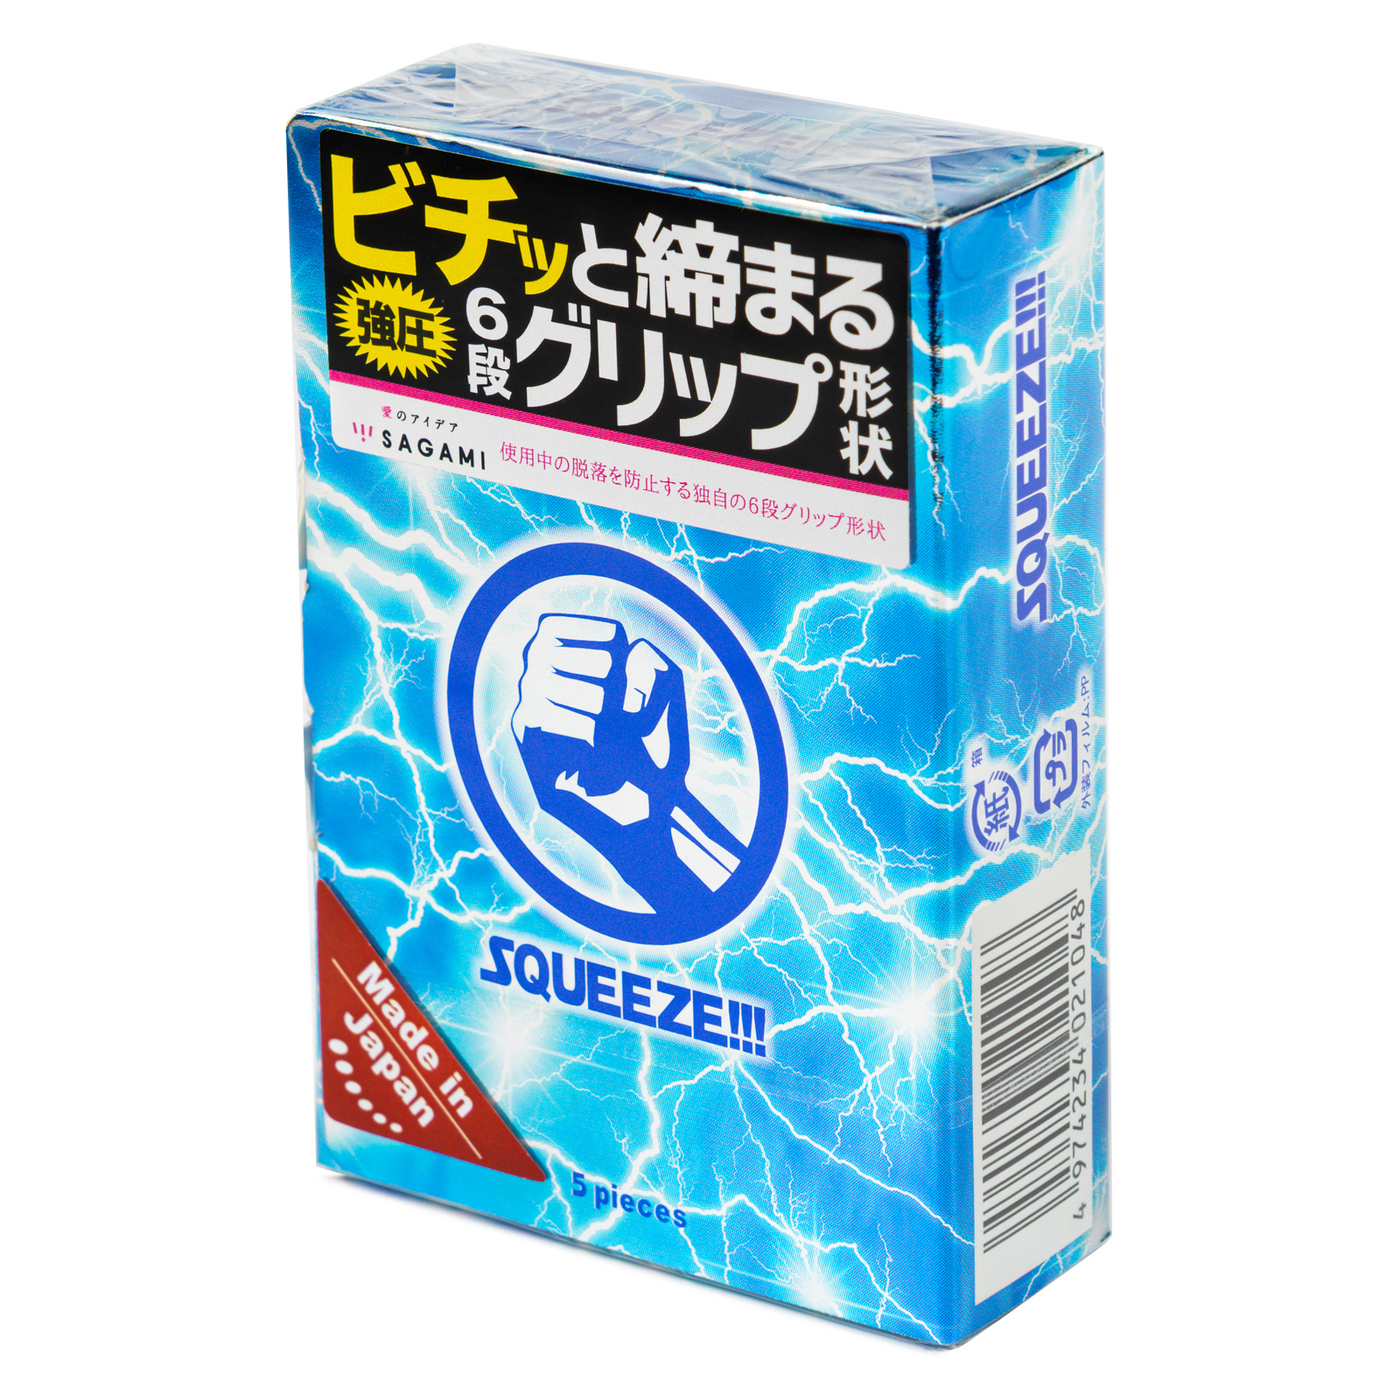 Sagami презервативы волнистой формы Squeeze, 5 шт.